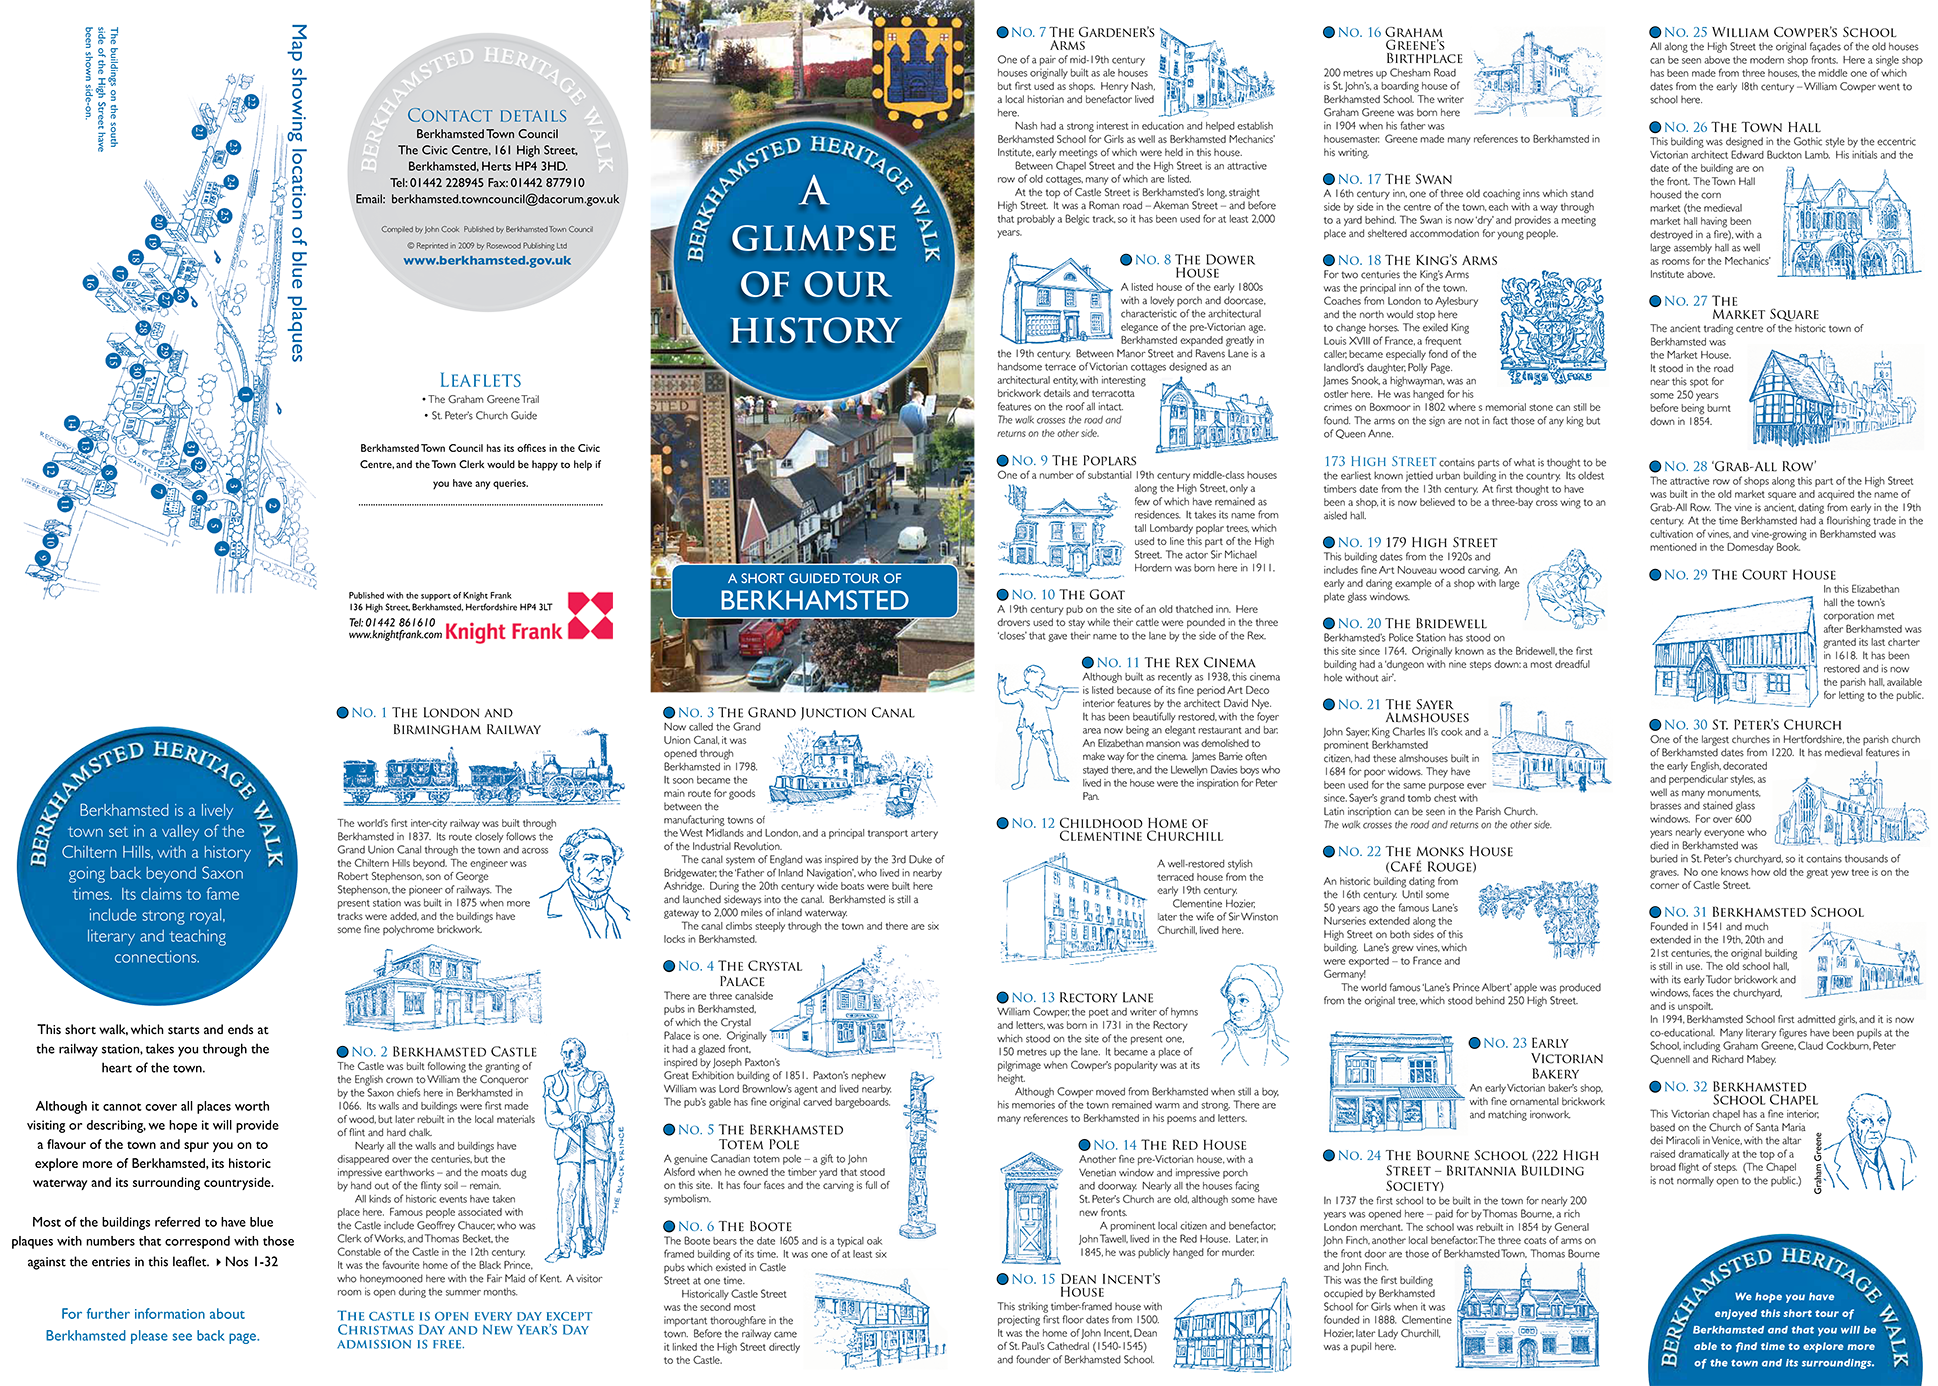 v2-blue-plaque-guide-berkhamsted-citizen-image-link